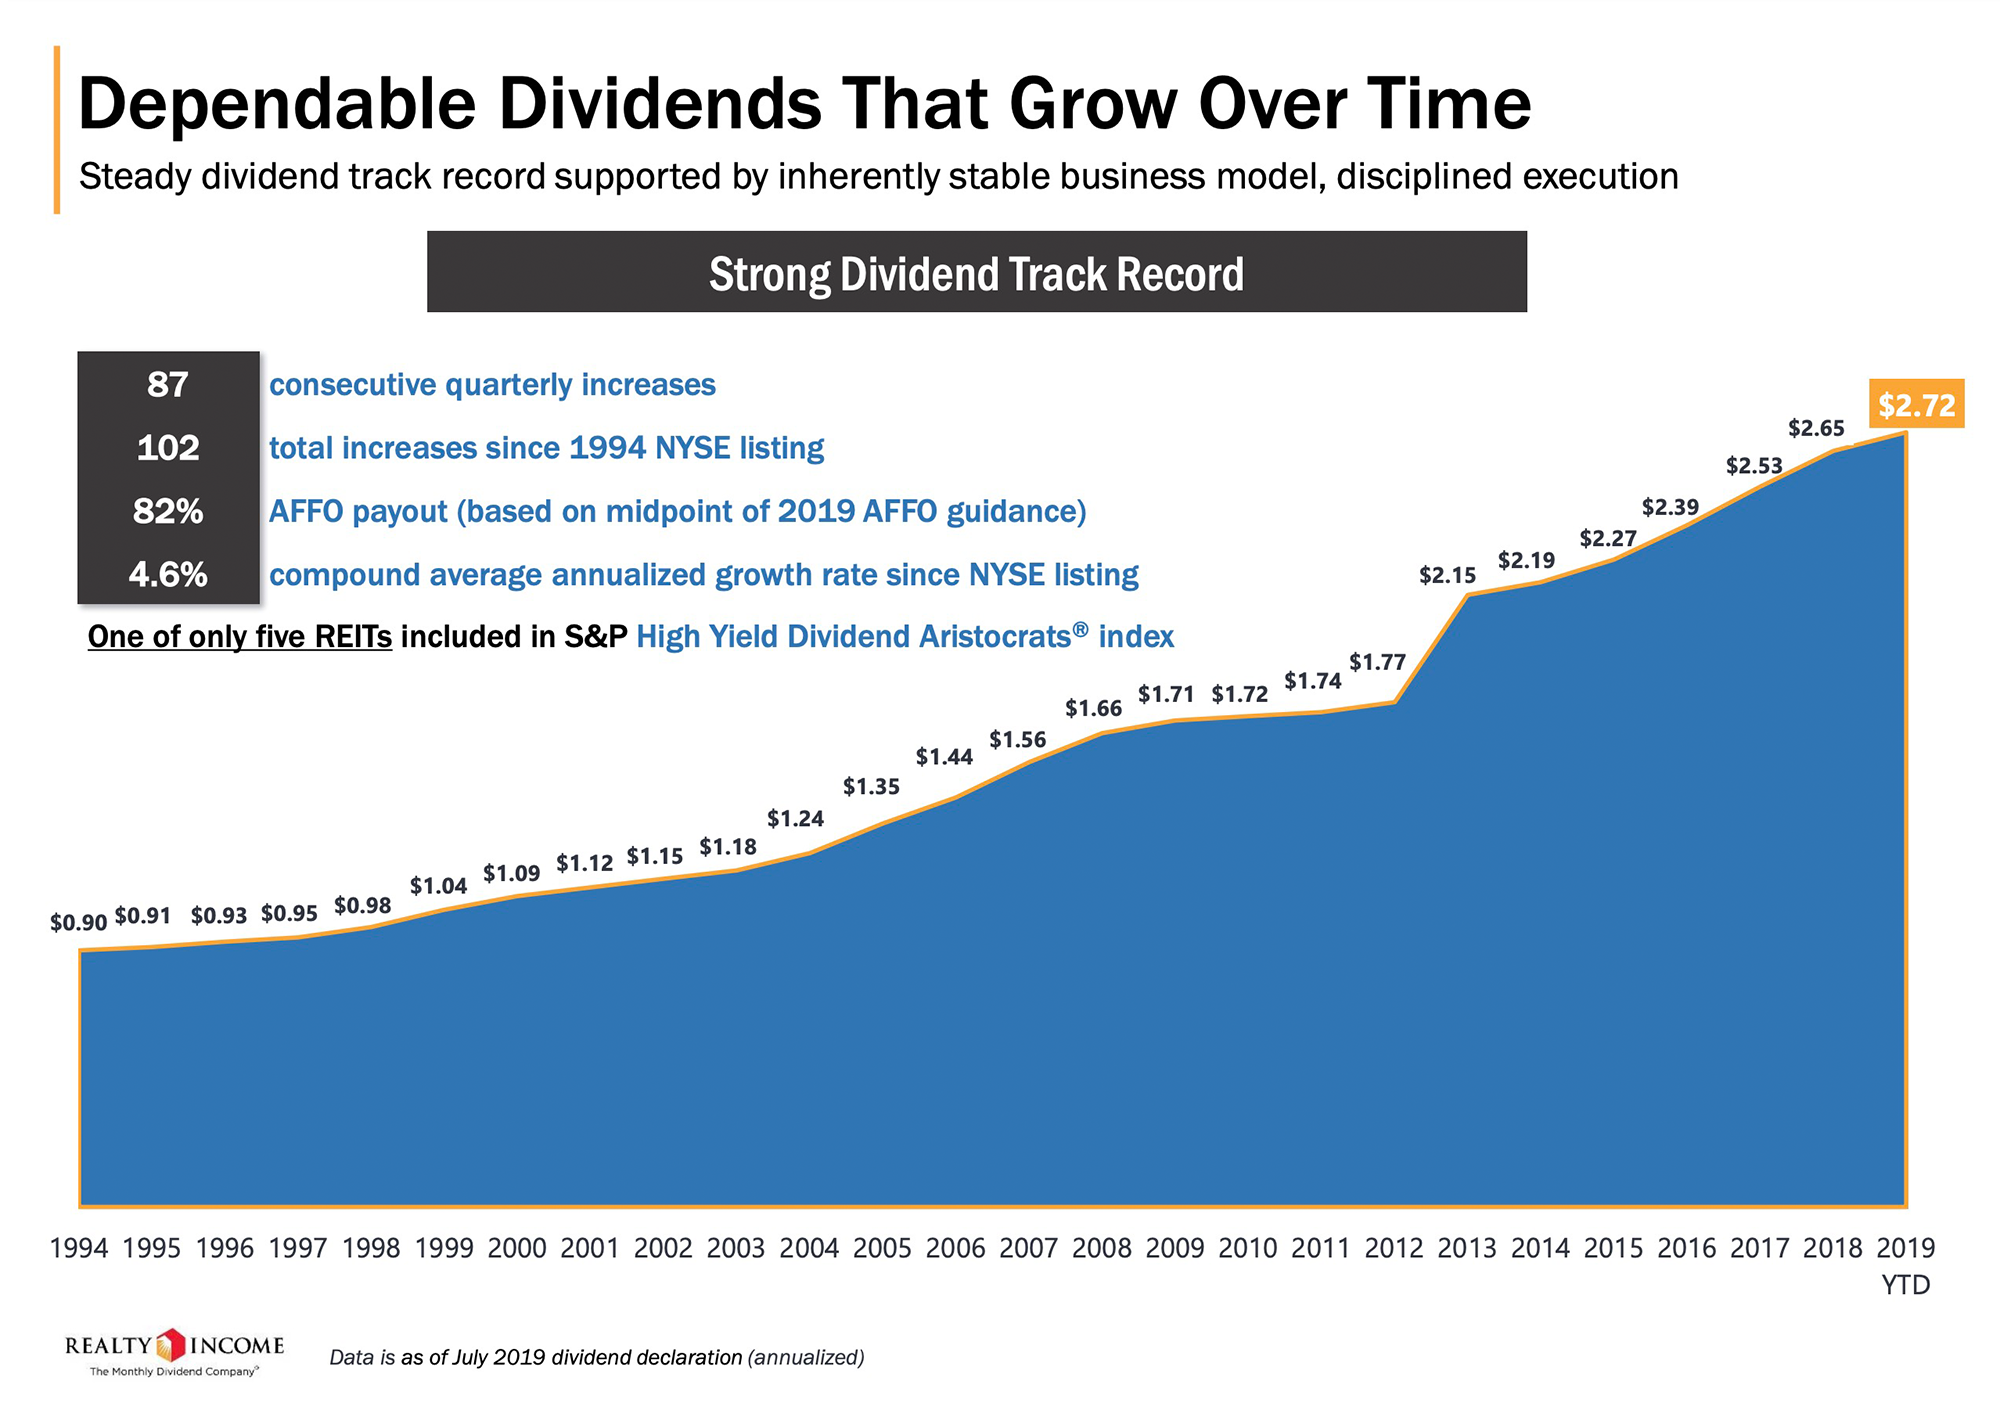 Данные из презентации компании Realty Income о постоянном увеличении дивидендов. С 1994, когда компания вышла на Нью-Йоркскую биржу, по 2018 год дивиденды были повышены 98 раз. Обычно — 84 раза — между повышениями проходило не больше квартала